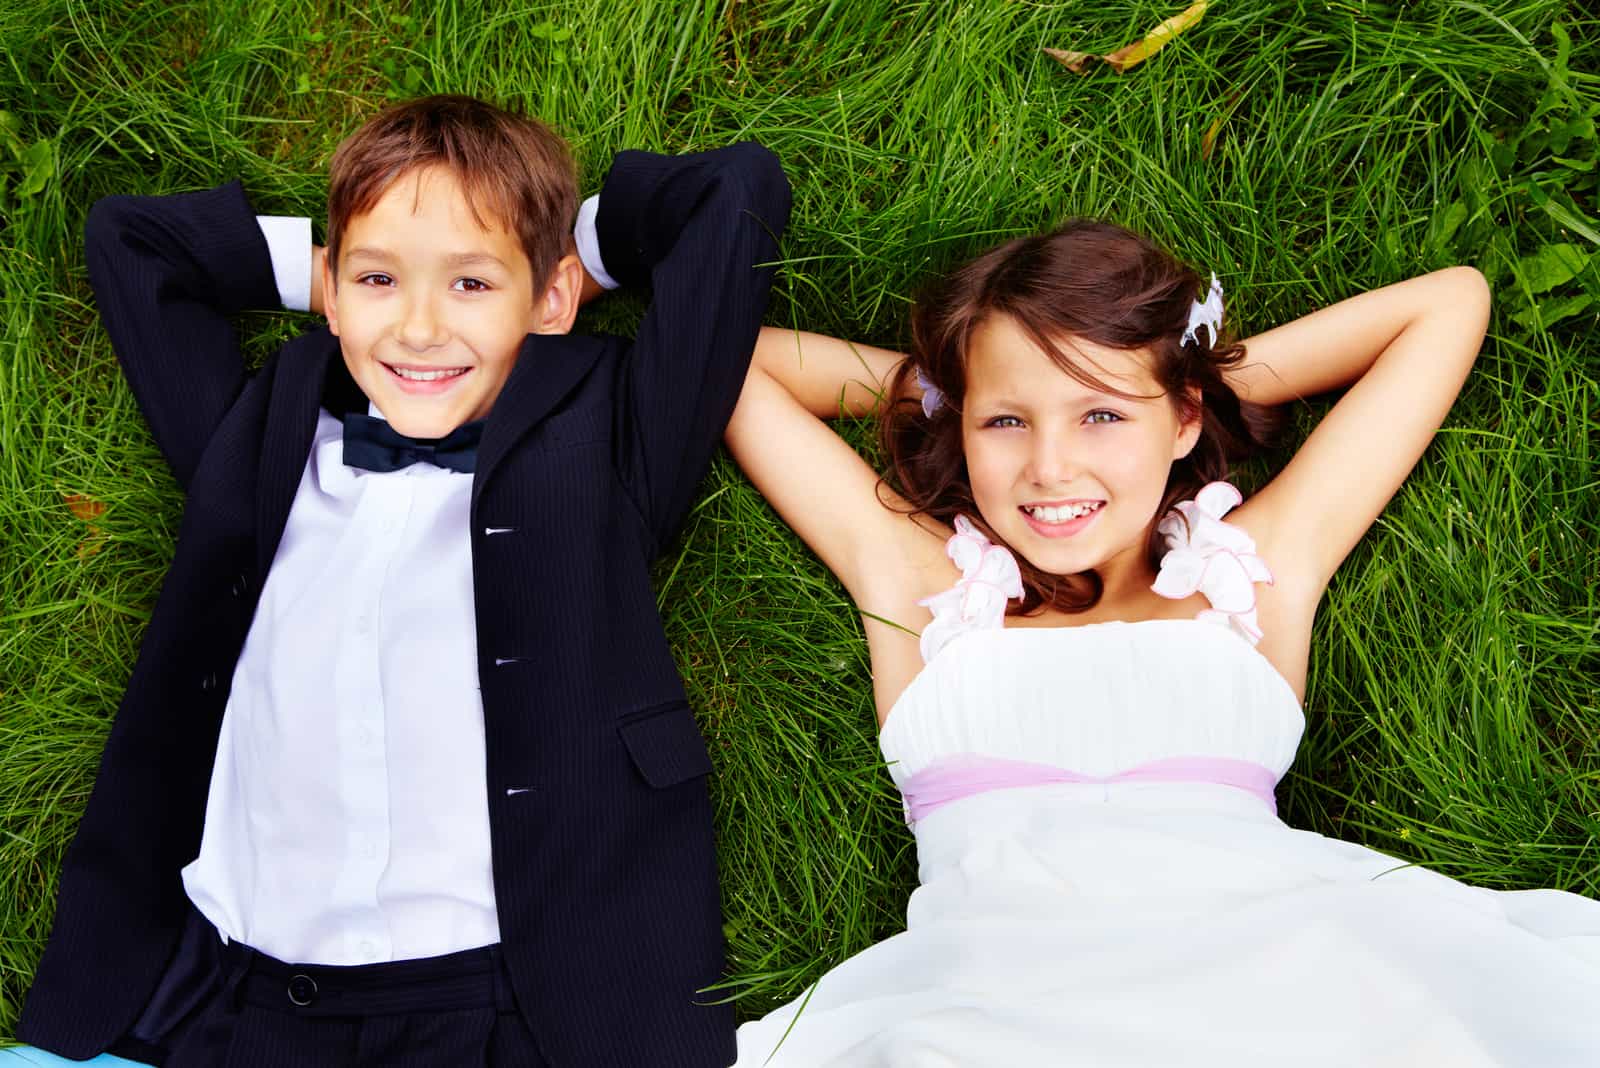 Porträt der Braut und des Bräutigams der lächelnden Kinder, die auf grünem Gras liegen und Kamera betrachten